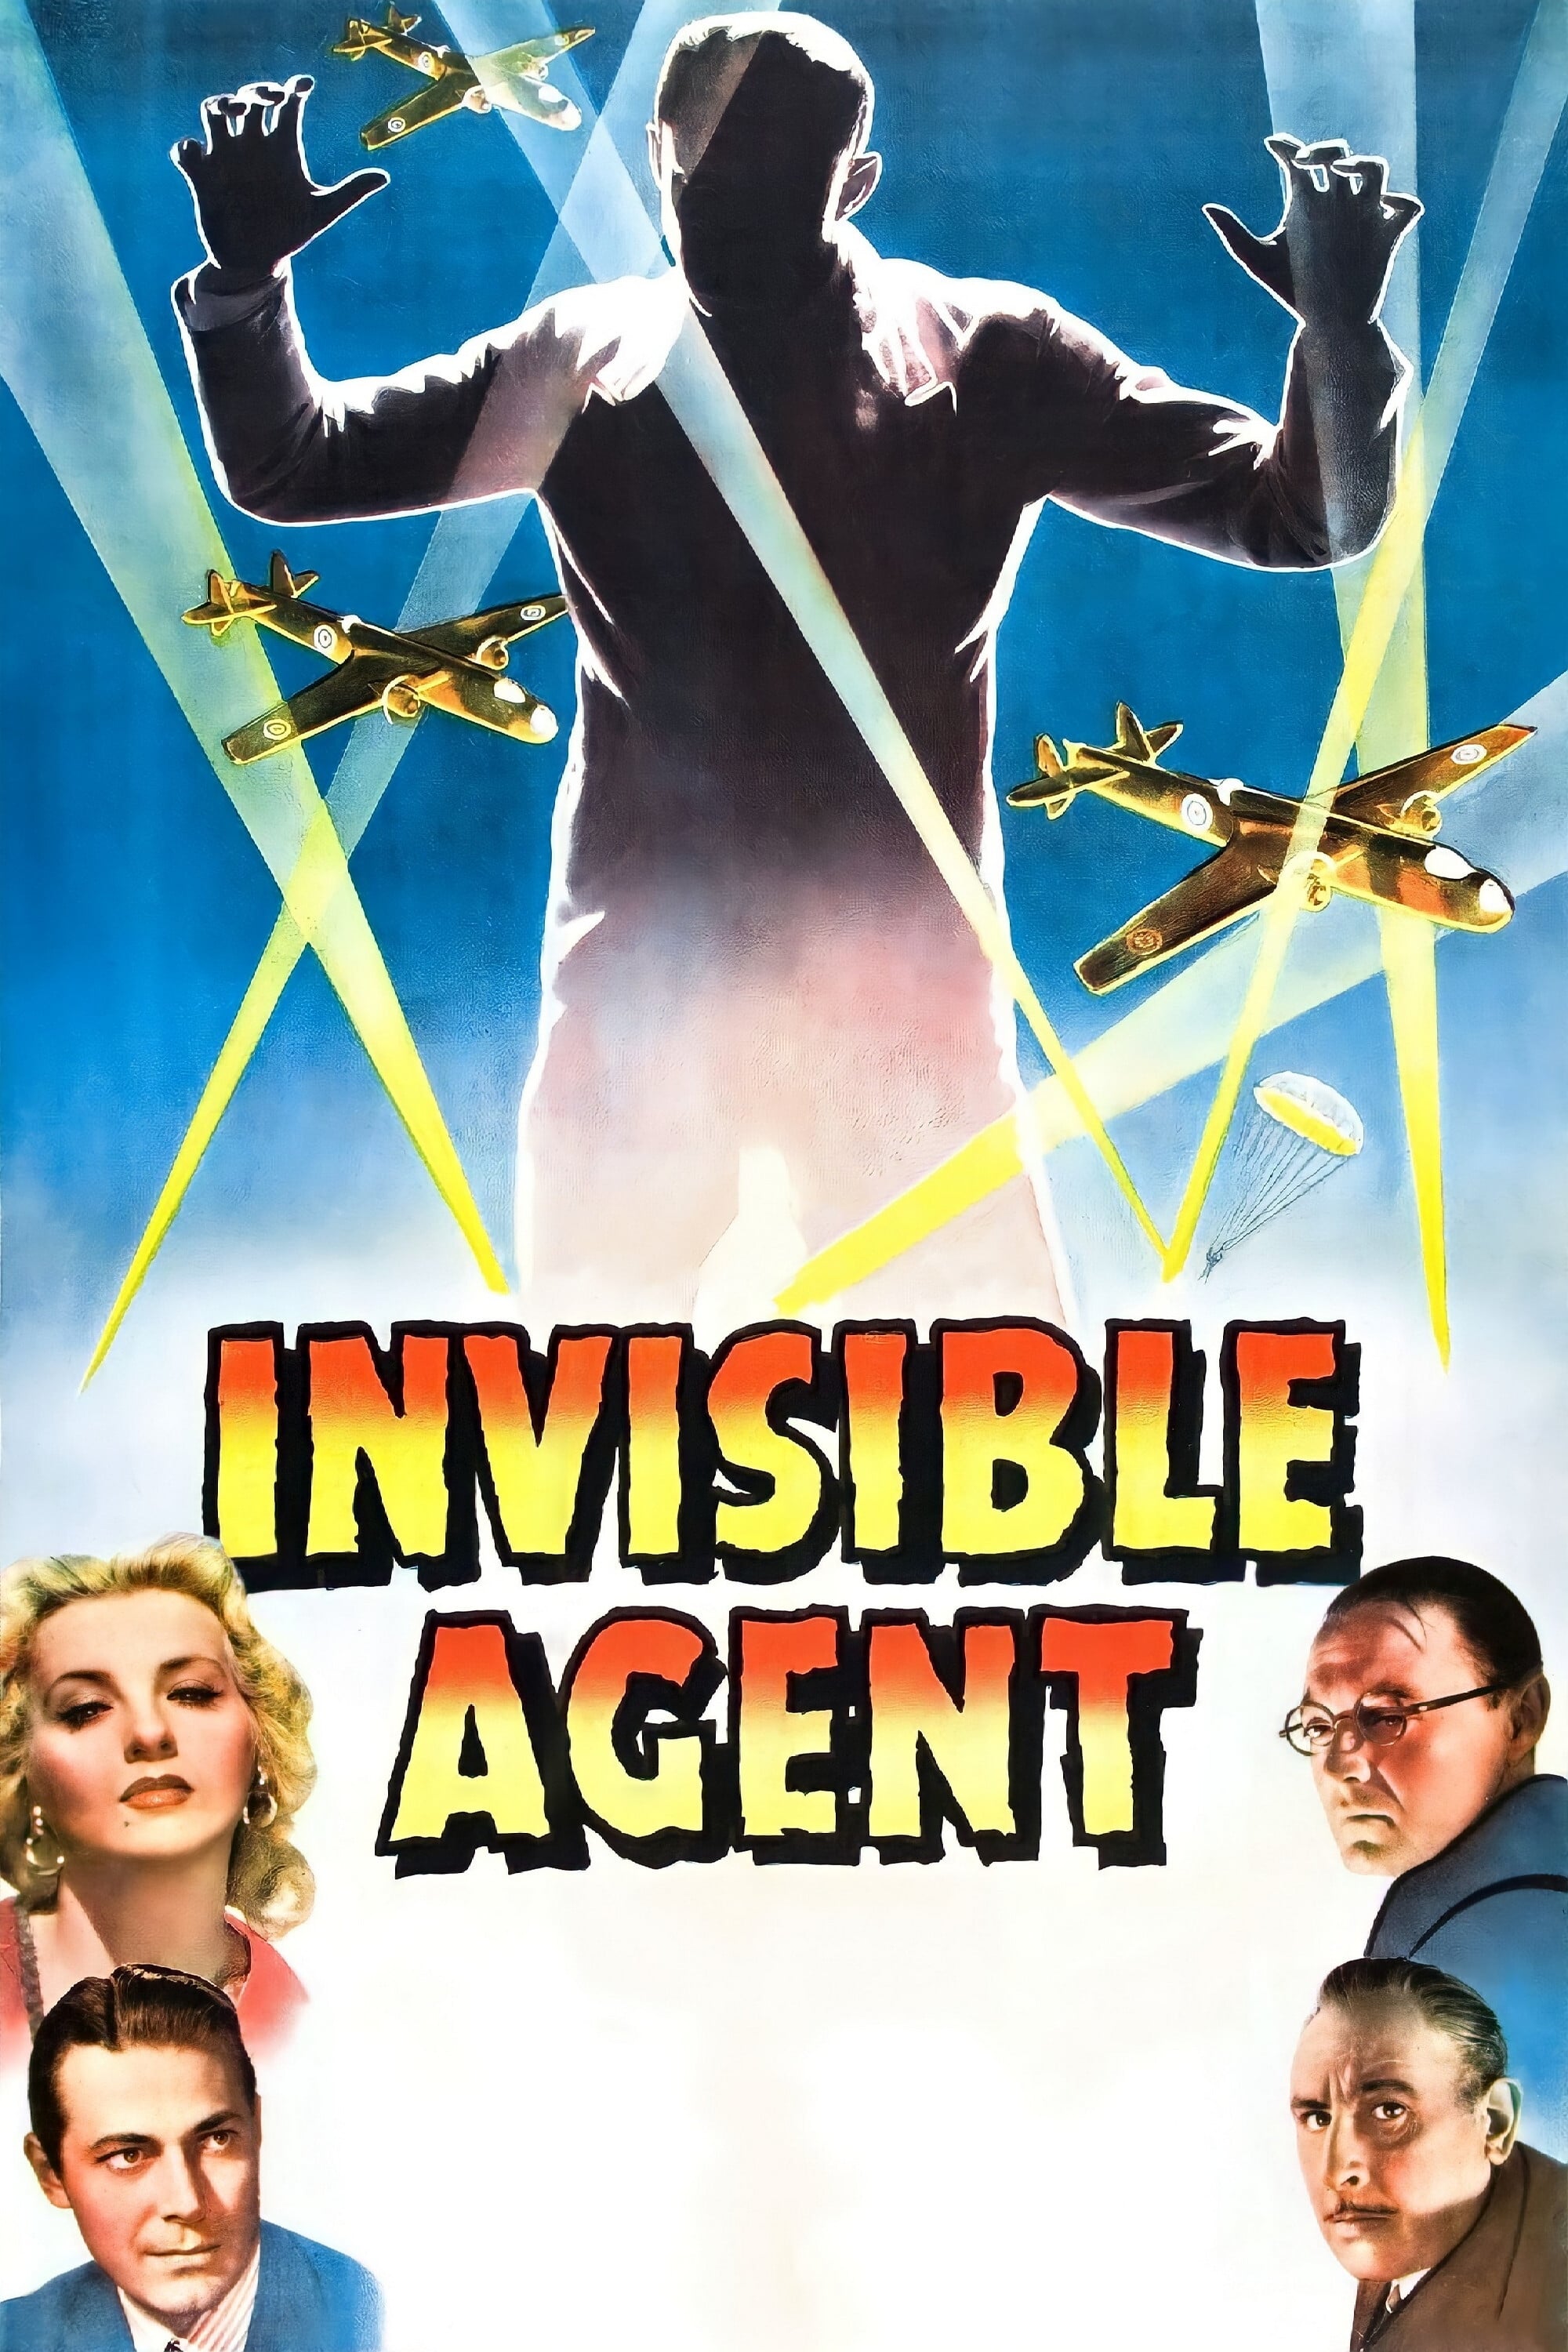 L'Agent invisible contre la Gestapo